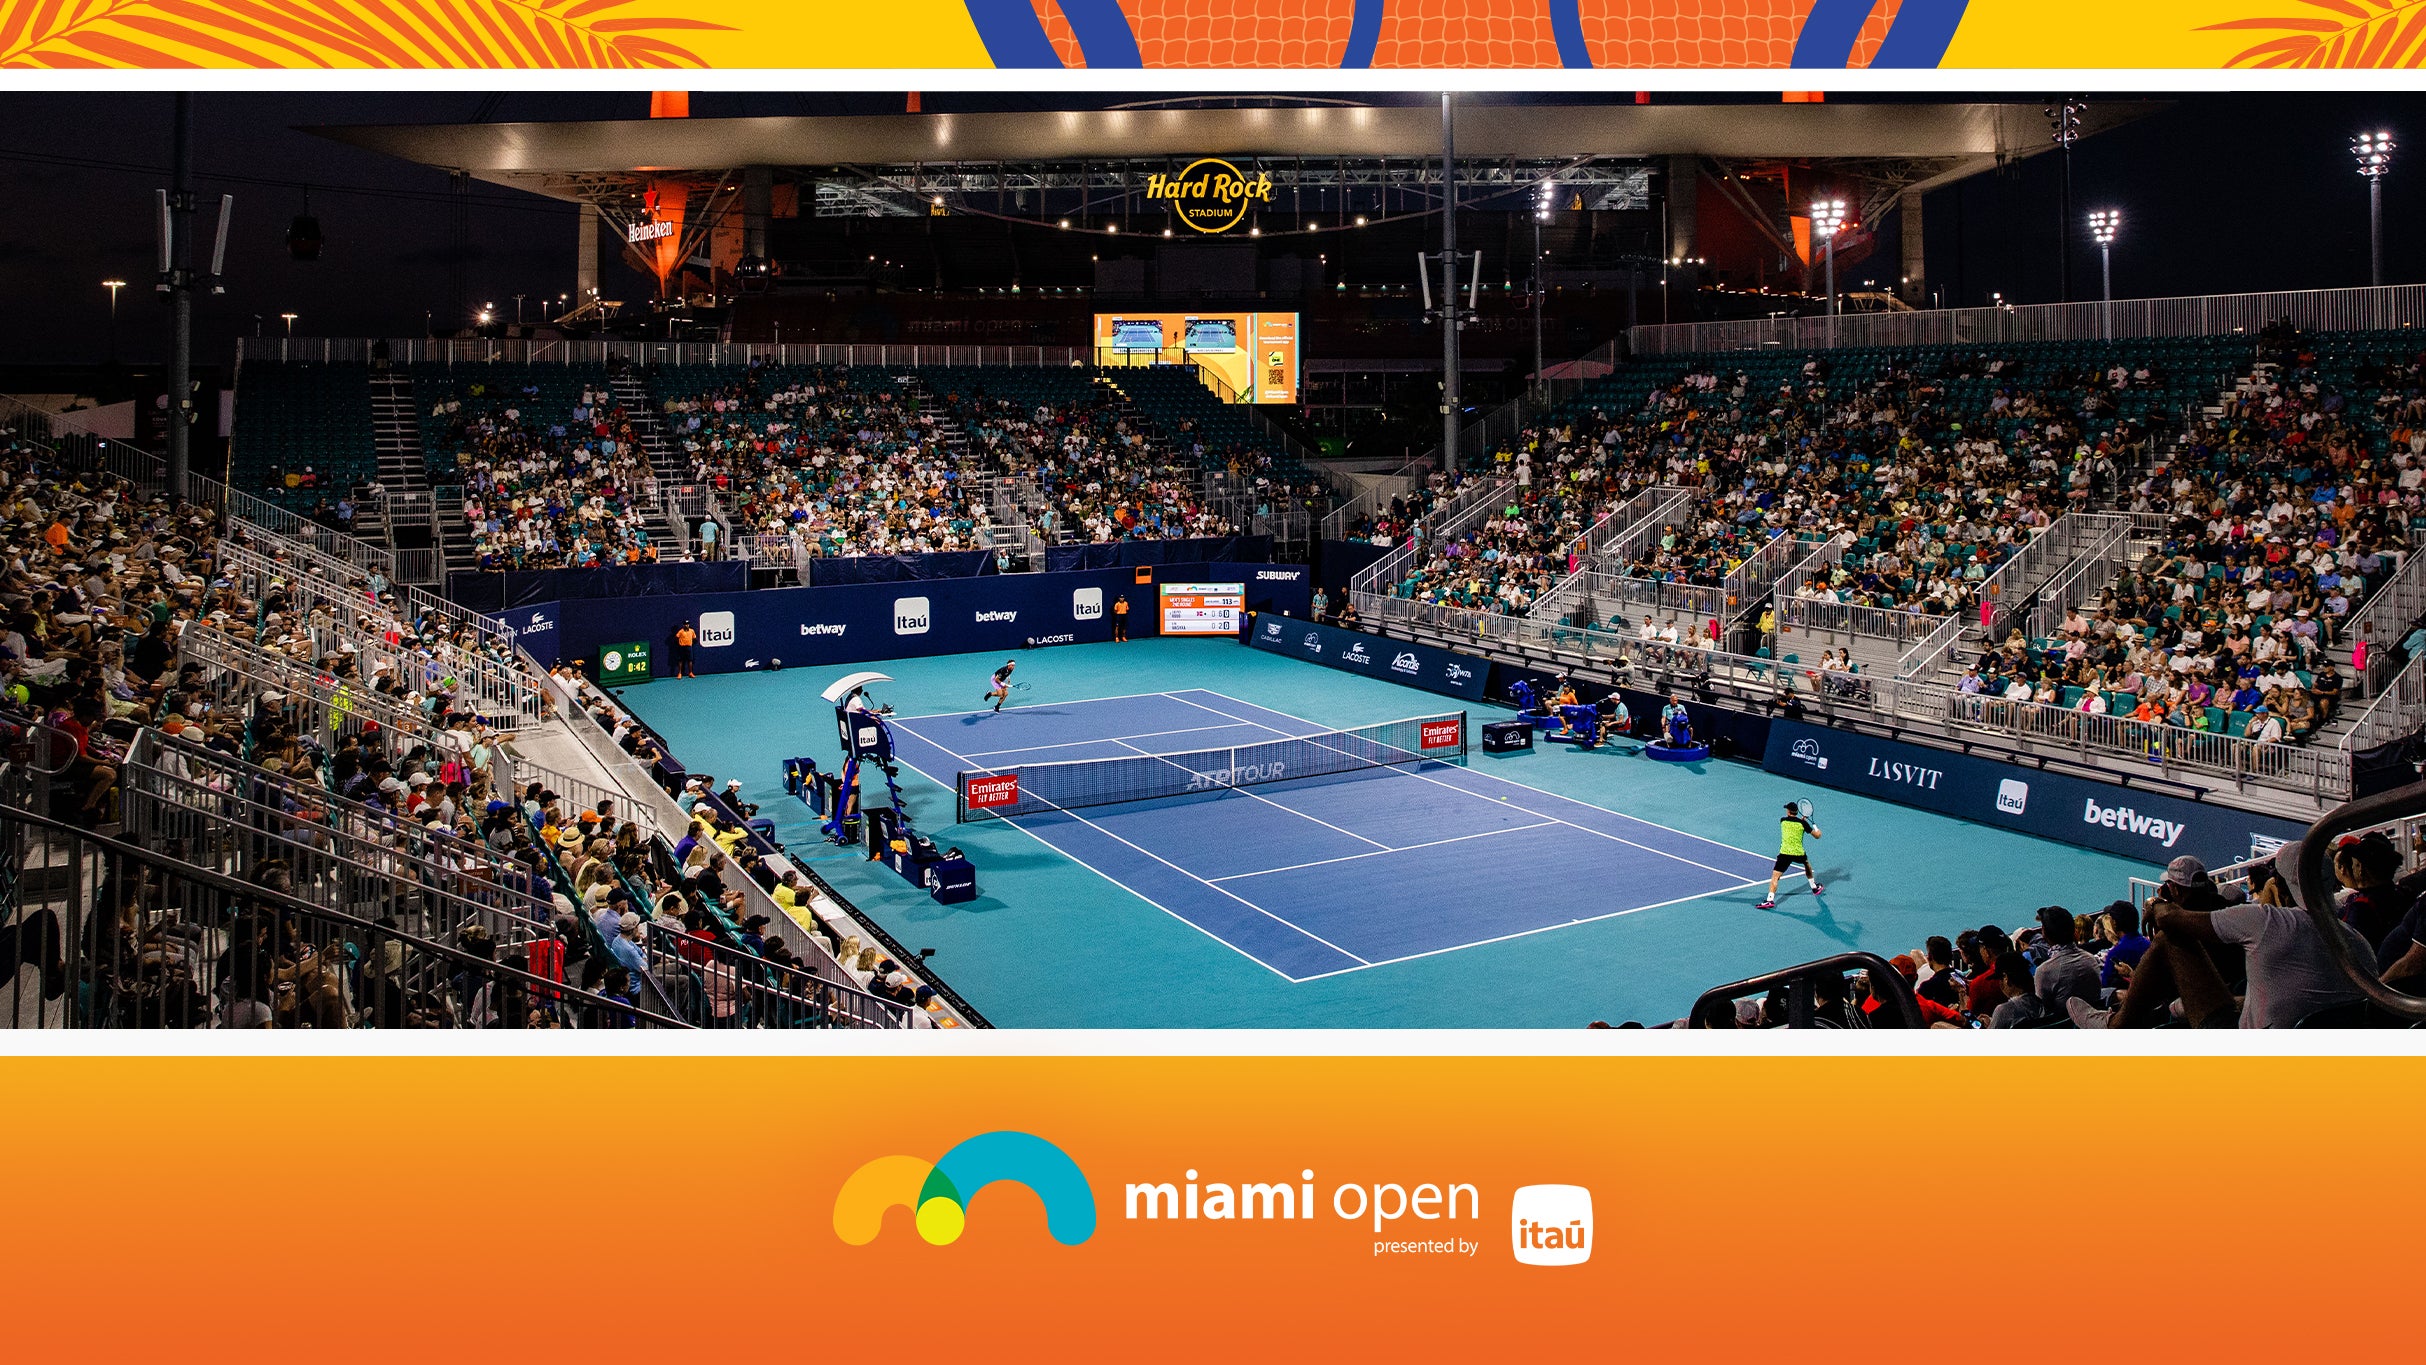 Miami Open - Grandstand Session 11 in Miami promo photo for Miami Open presale offer code